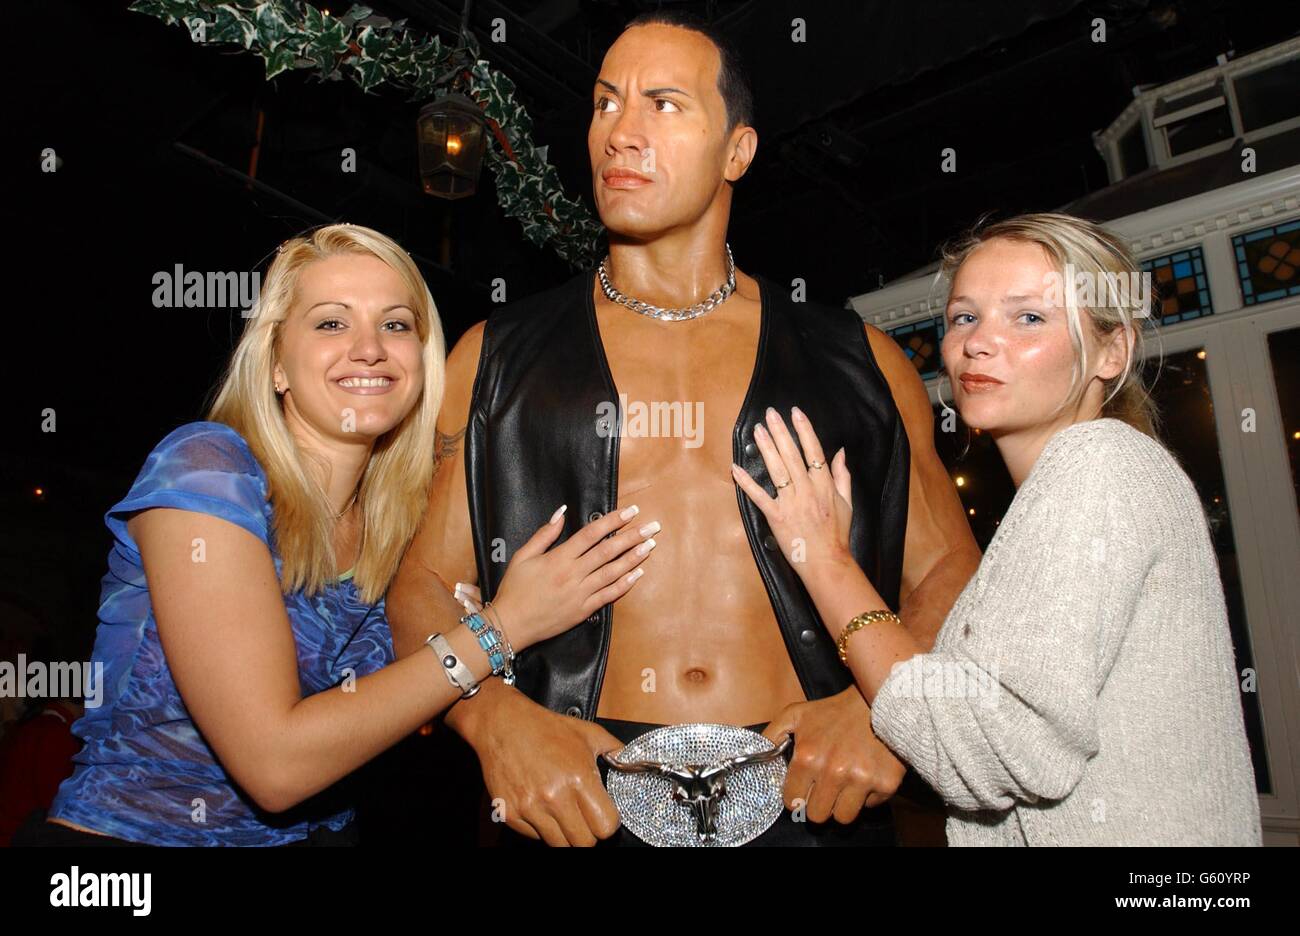 Izina Lyssenkova de Russie (à gauche) et SIW Flod Jensen du Danemark, admirez le nouveau modèle de cire du lutteur de la WWE et de l'acteur « The Rock », alias Dwayne Johnson, exposé à Madame Tussaud, Londres. Banque D'Images